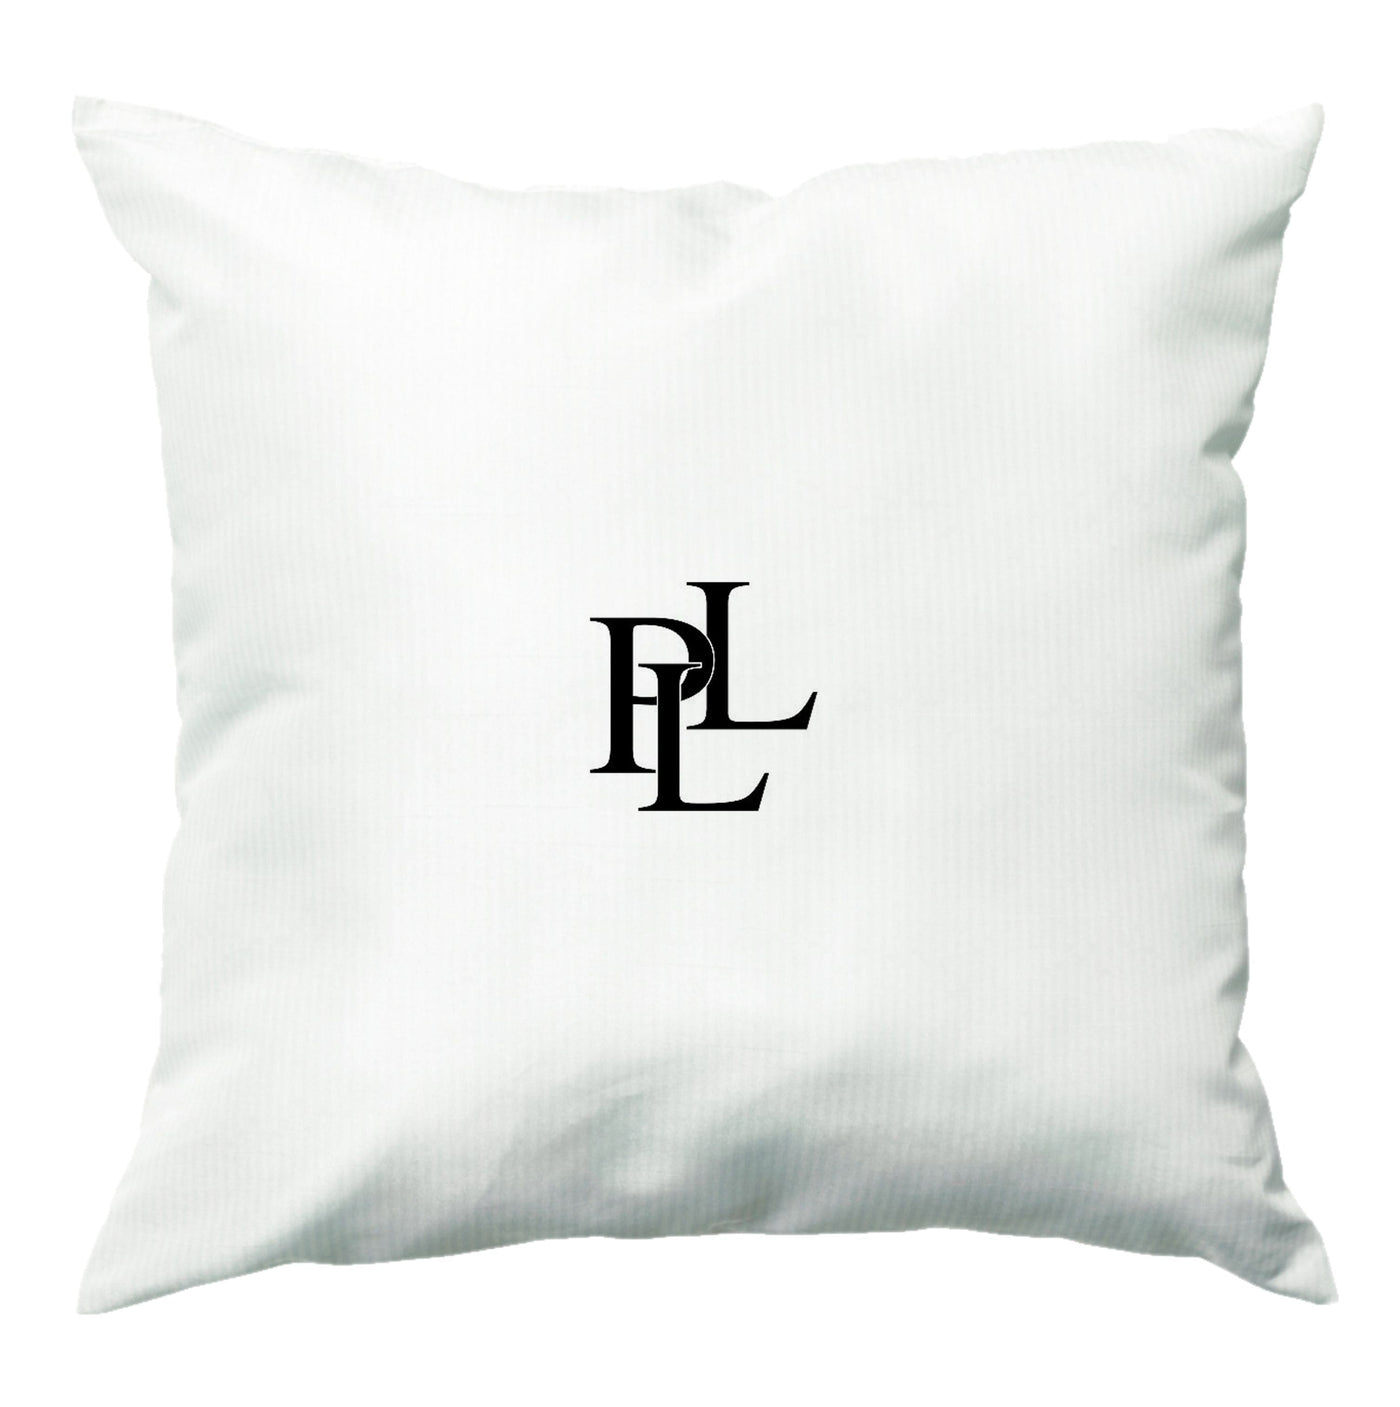 Pretty Little Liars - PLL Logo Cushion